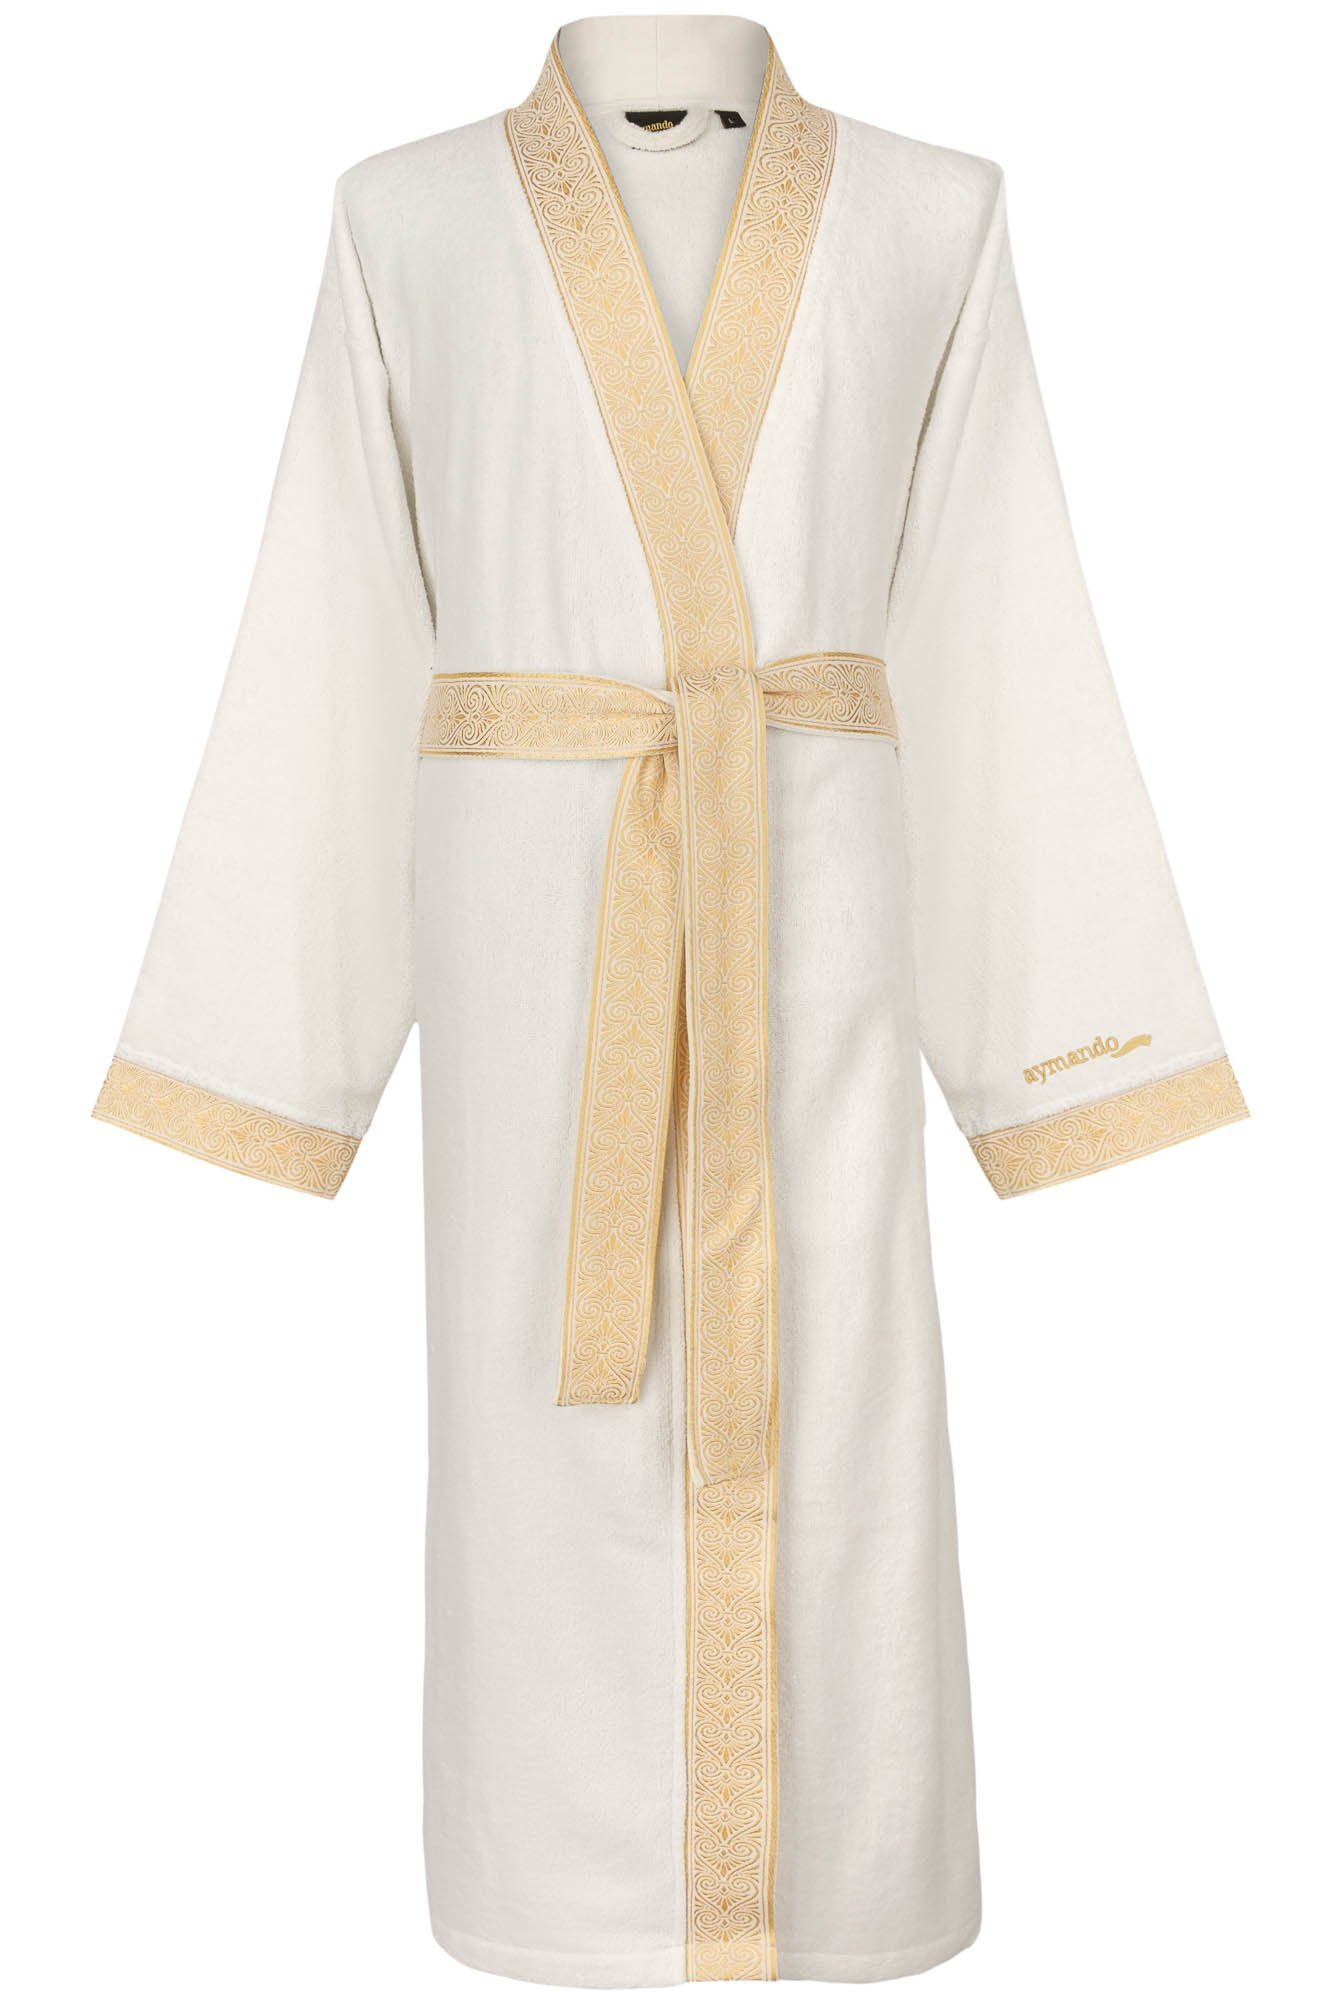 Aymando Bademantel Weiß, XL, 100% Baumwolle, Kimono-Kragen, Bindegürtel, Gold gestickte Blende mit Ornament Optik, Geschenkverpackung